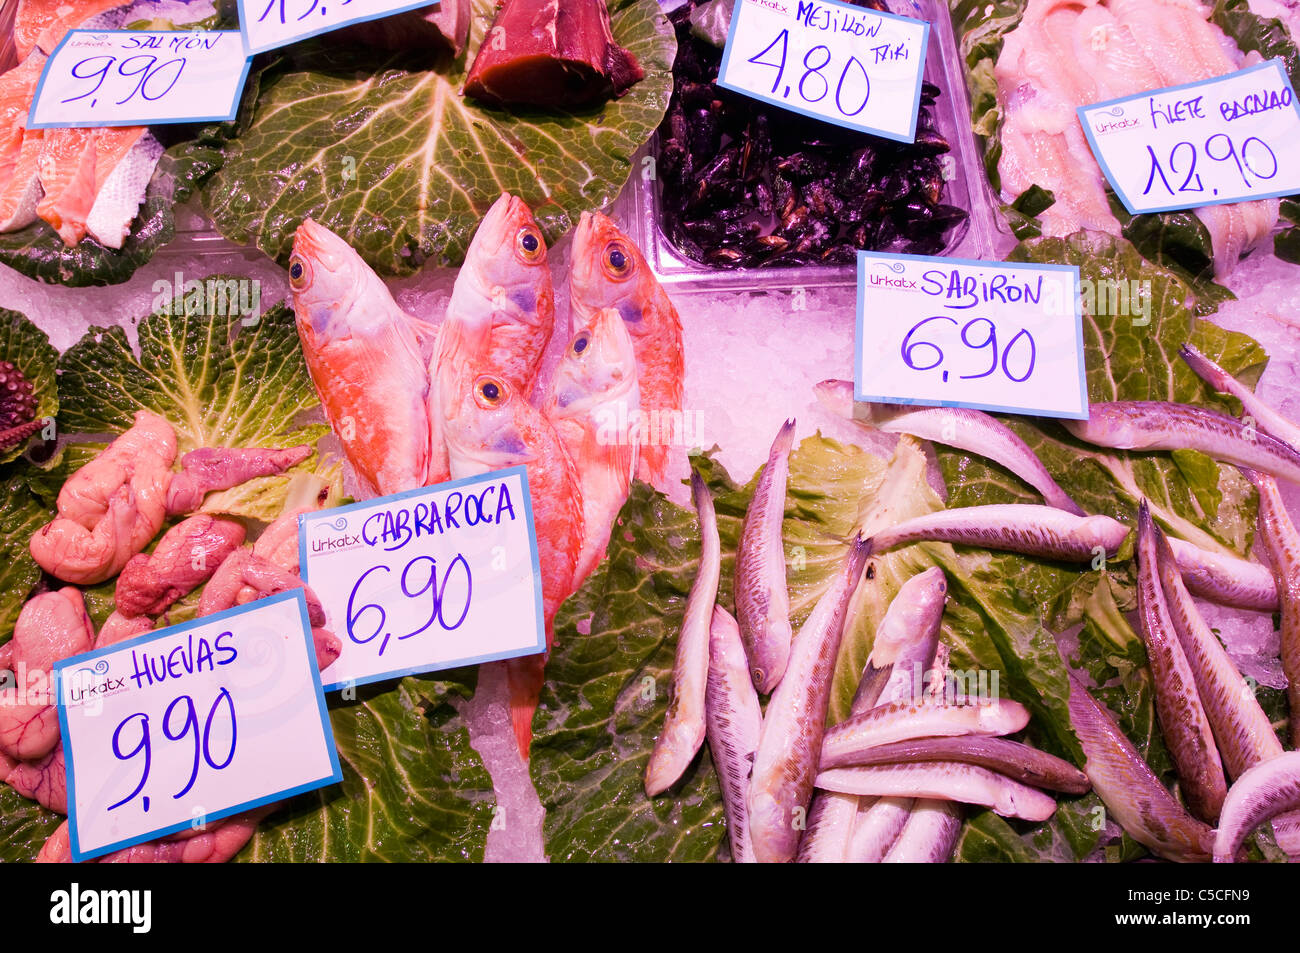 Frischfisch auf Eis auf Sales bei einem Fischhändler Stockfoto